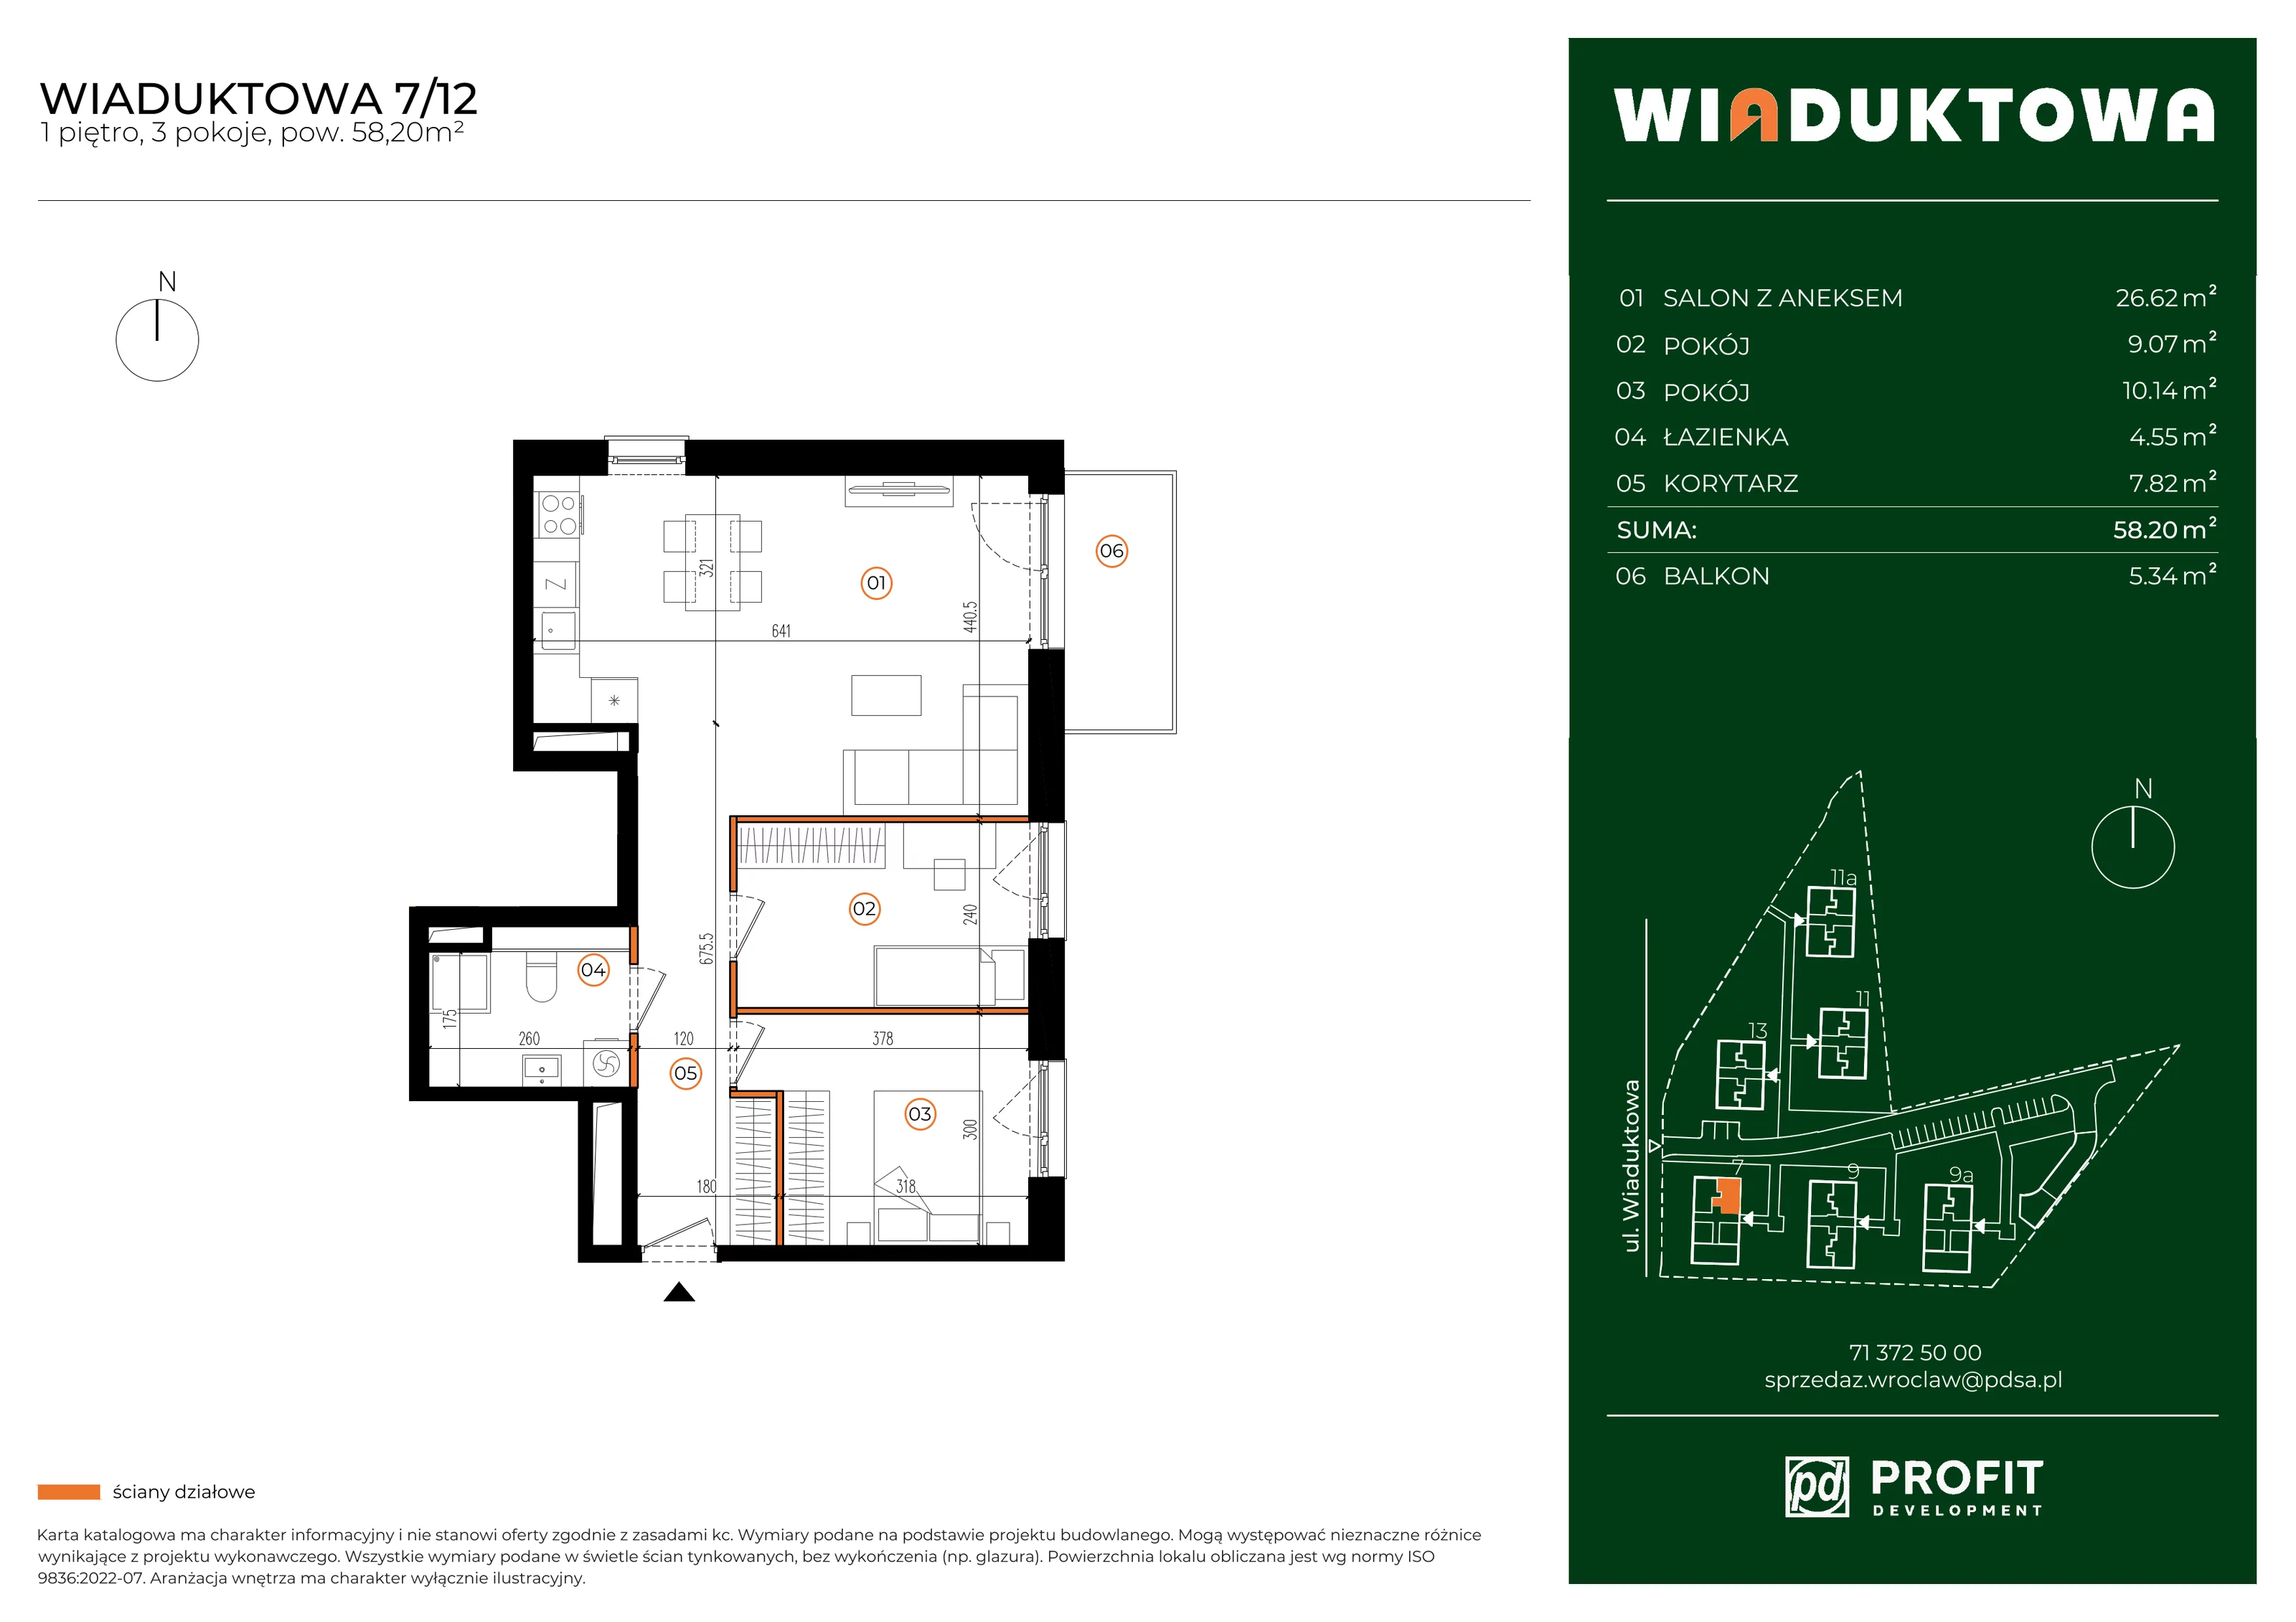 Mieszkanie 58,20 m², piętro 1, oferta nr WI/7/12, Wiaduktowa, Wrocław, Krzyki-Partynice, Krzyki, ul. Wiaduktowa